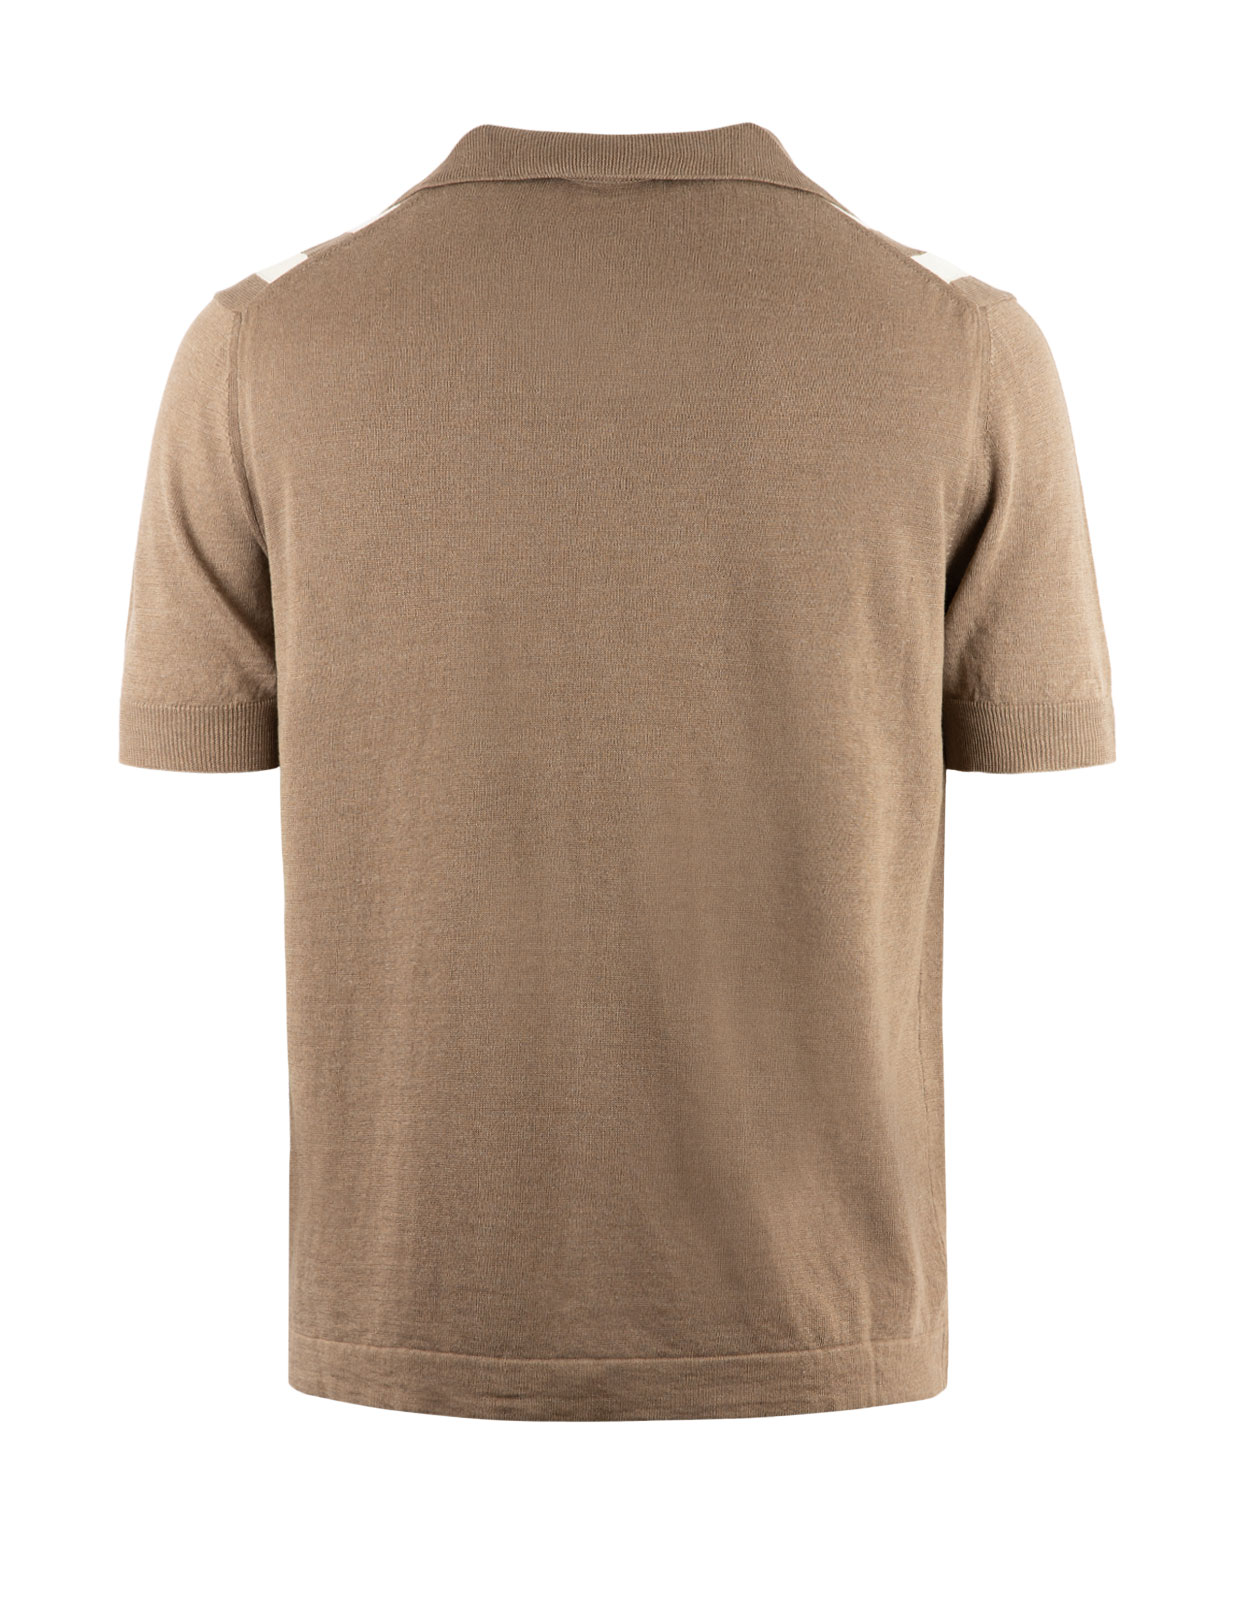 Bowlingskjorta Stickad Kortärmad Grey/Brown Stl XL